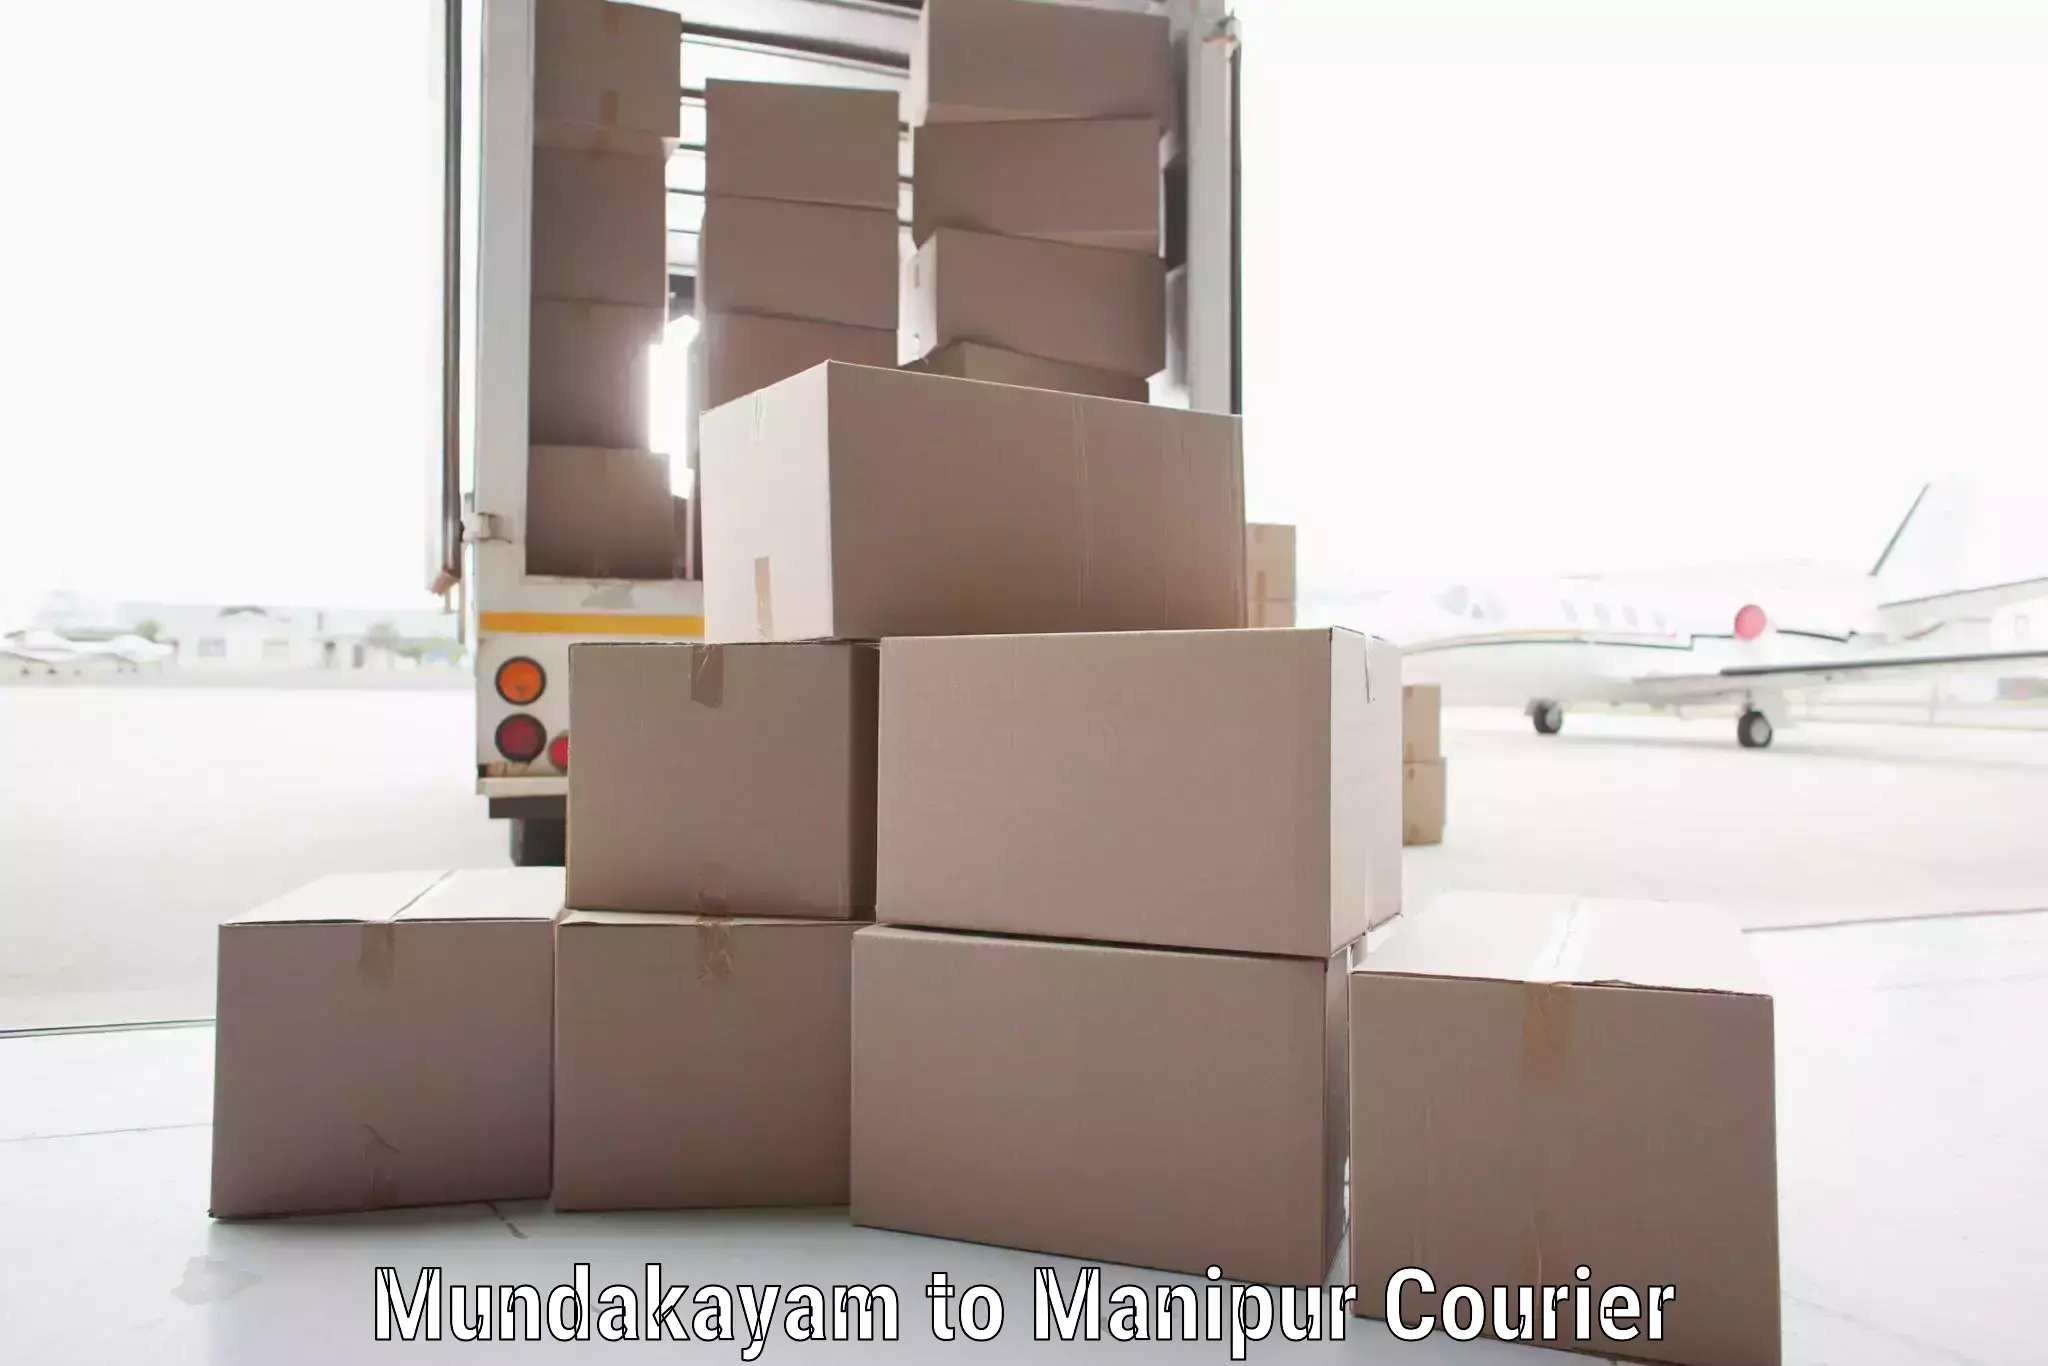 Smart shipping technology Mundakayam to Kakching